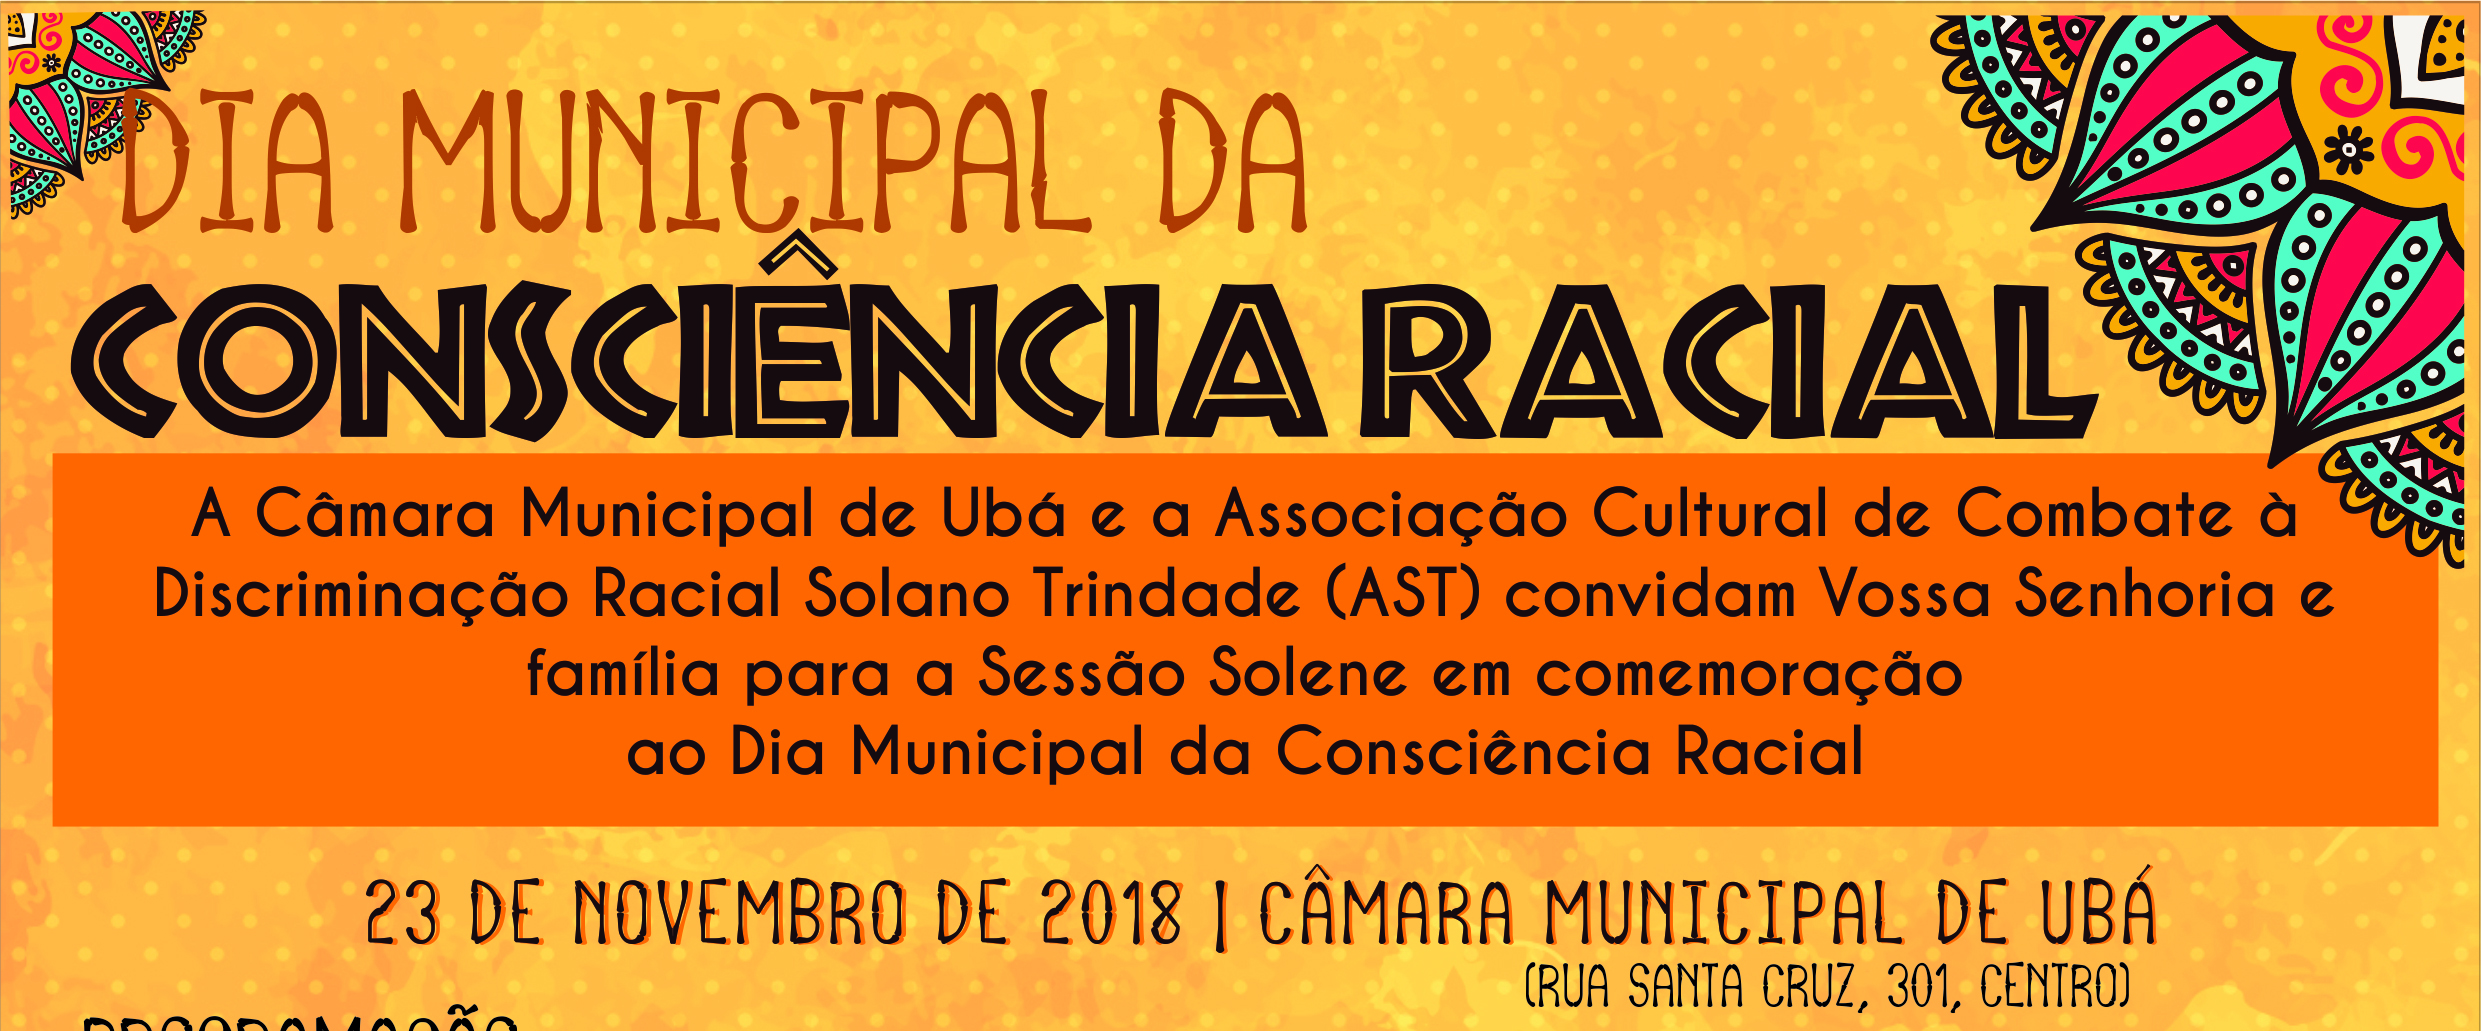 Dia Municipal da Consciência Racial será celebrado na sexta-feira